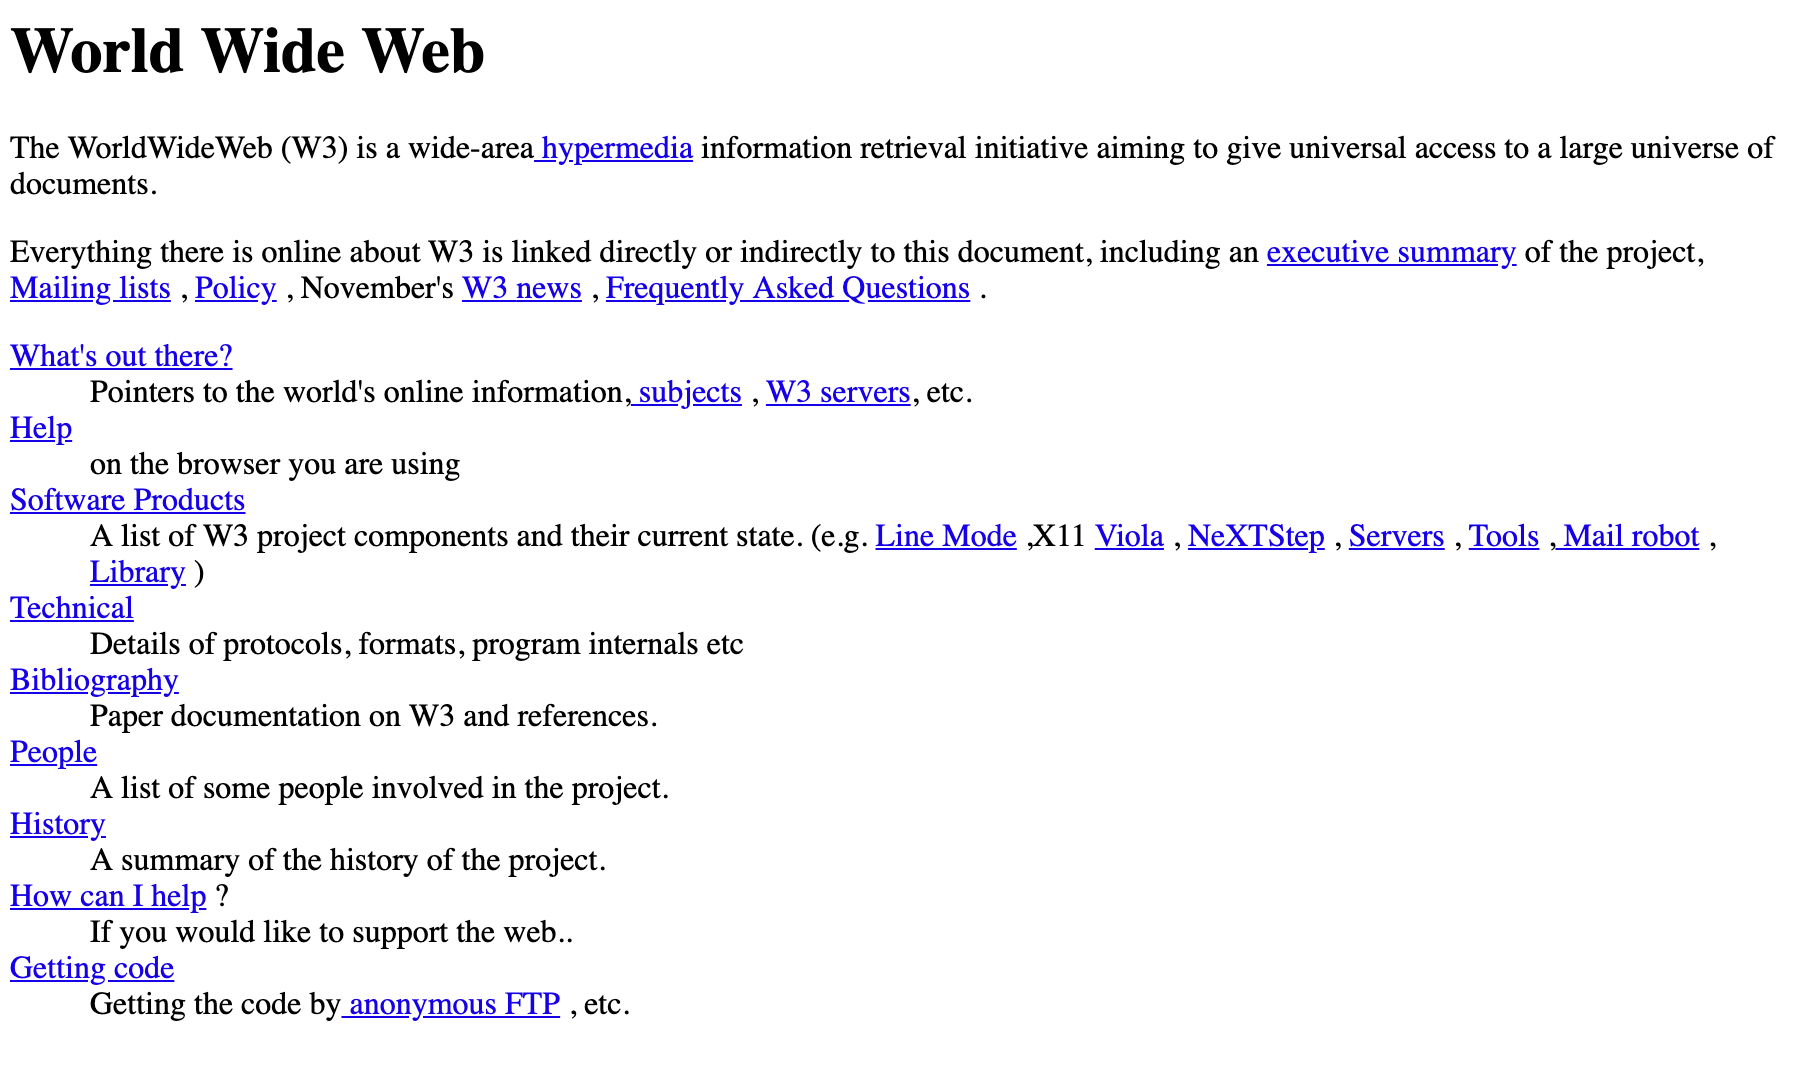 Imagen del primer sitio web de Internet, creado en 1991